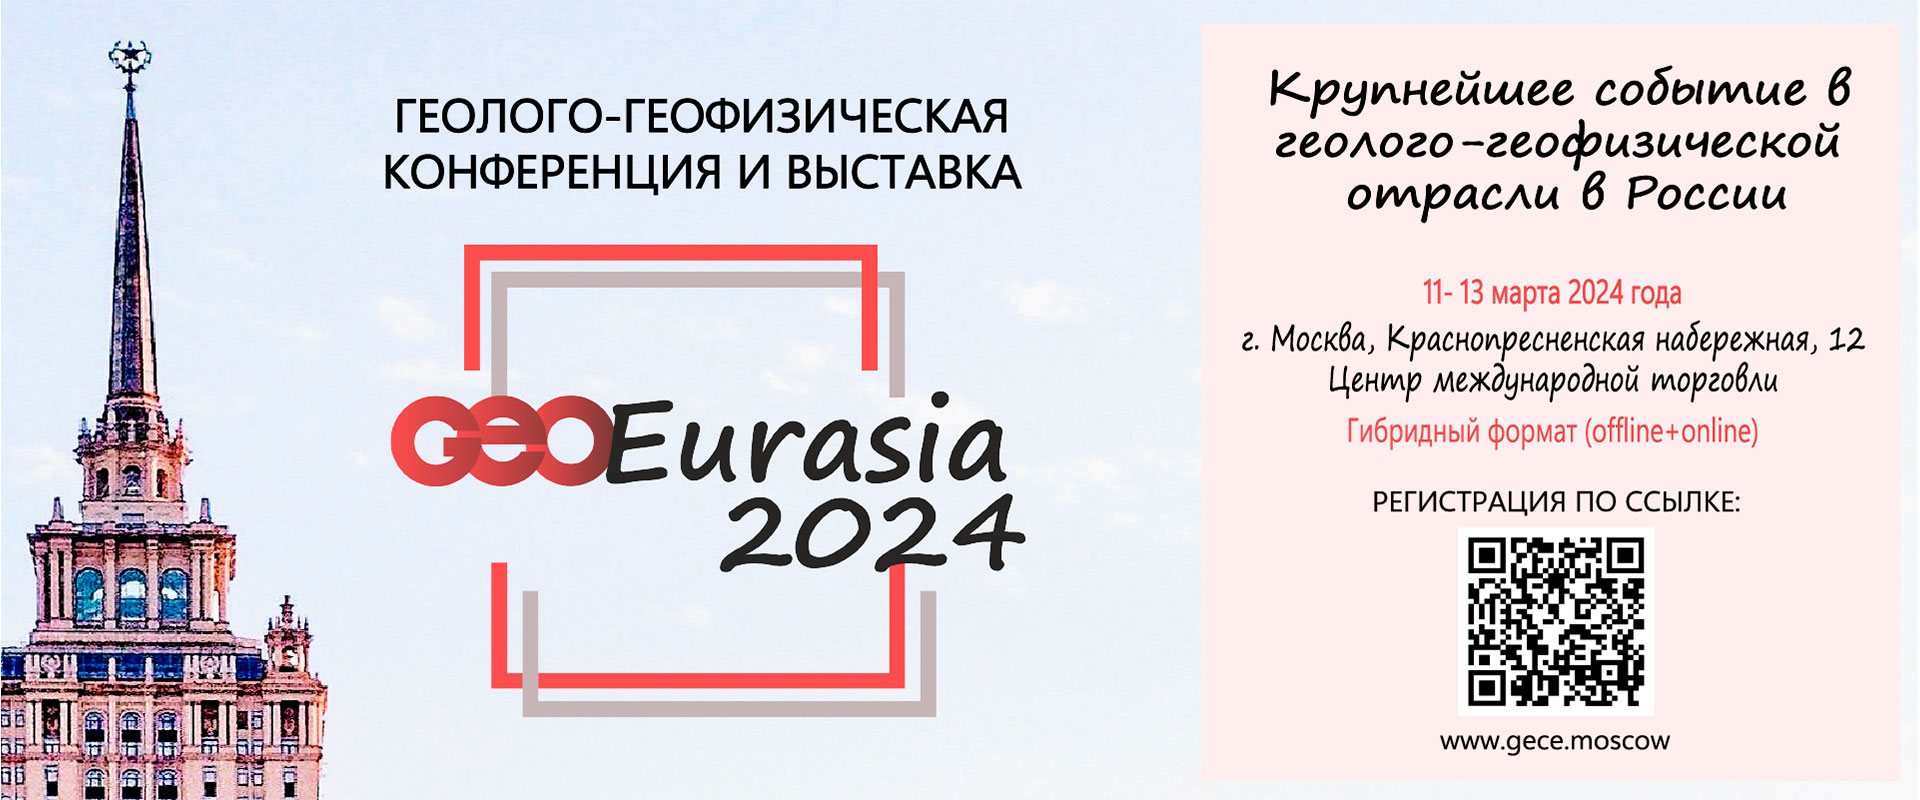 Конференция и выставка ГеоЕвразия 2024 Москва